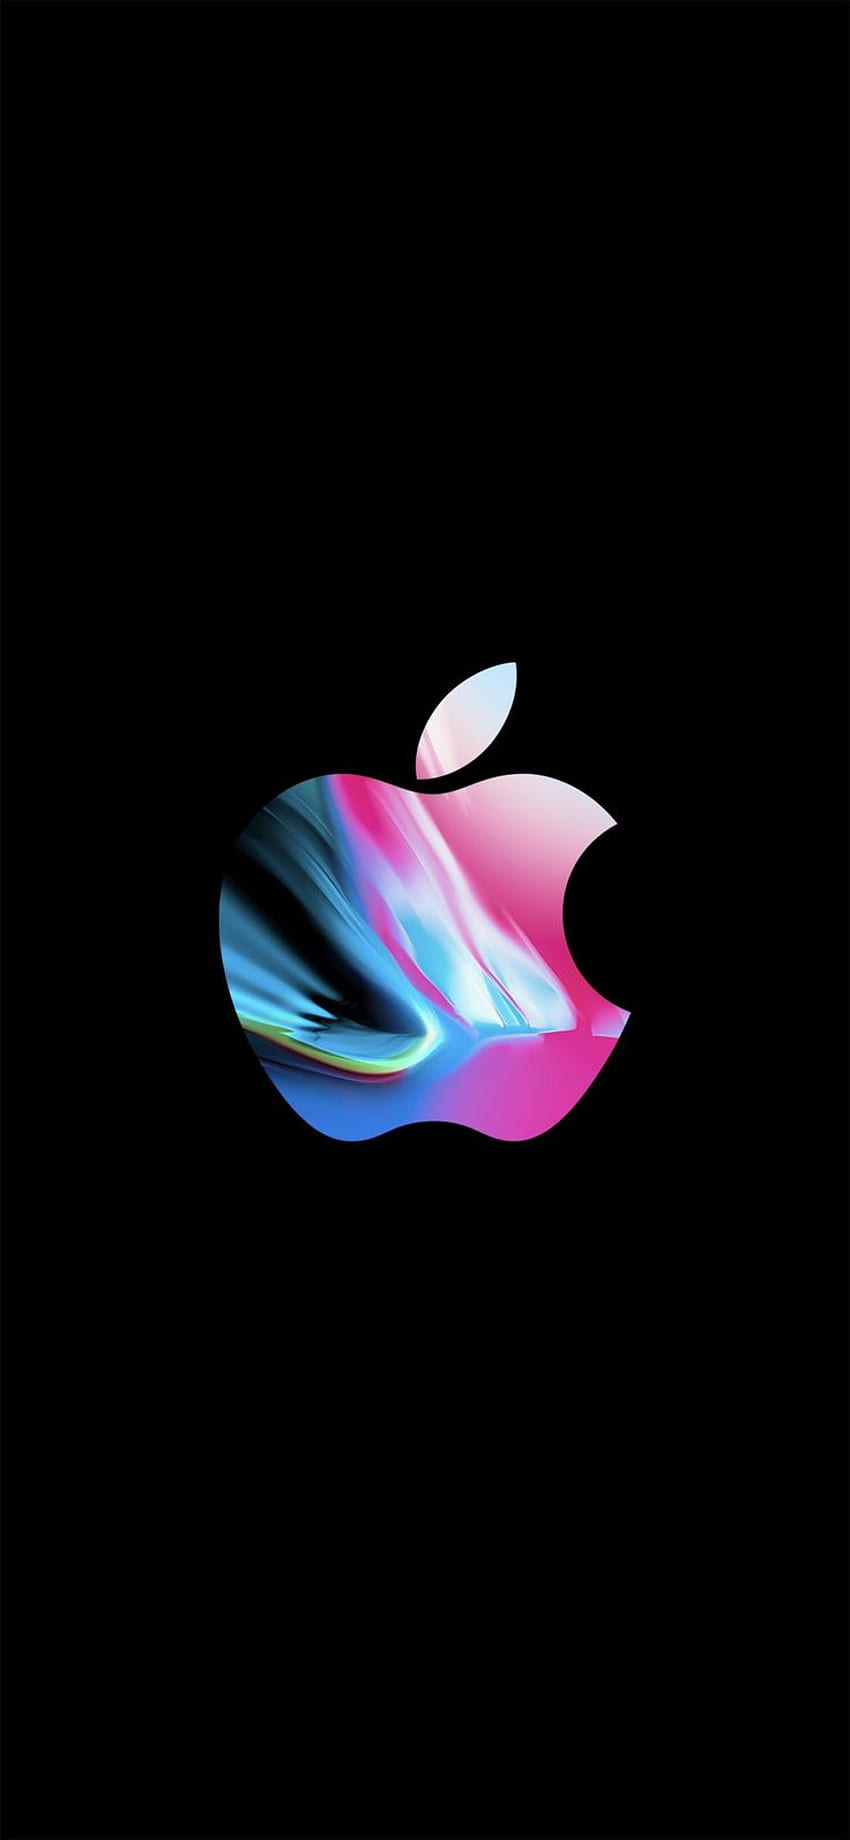 اجمل صور خلفيات الآيفون اكس الأصلية وأحلى خلفية موبايل Apple iPhone X - عالم الصور. Apple logo iphone, iPhone , Apple logo, Apple AMOLED HD phone wallpaper